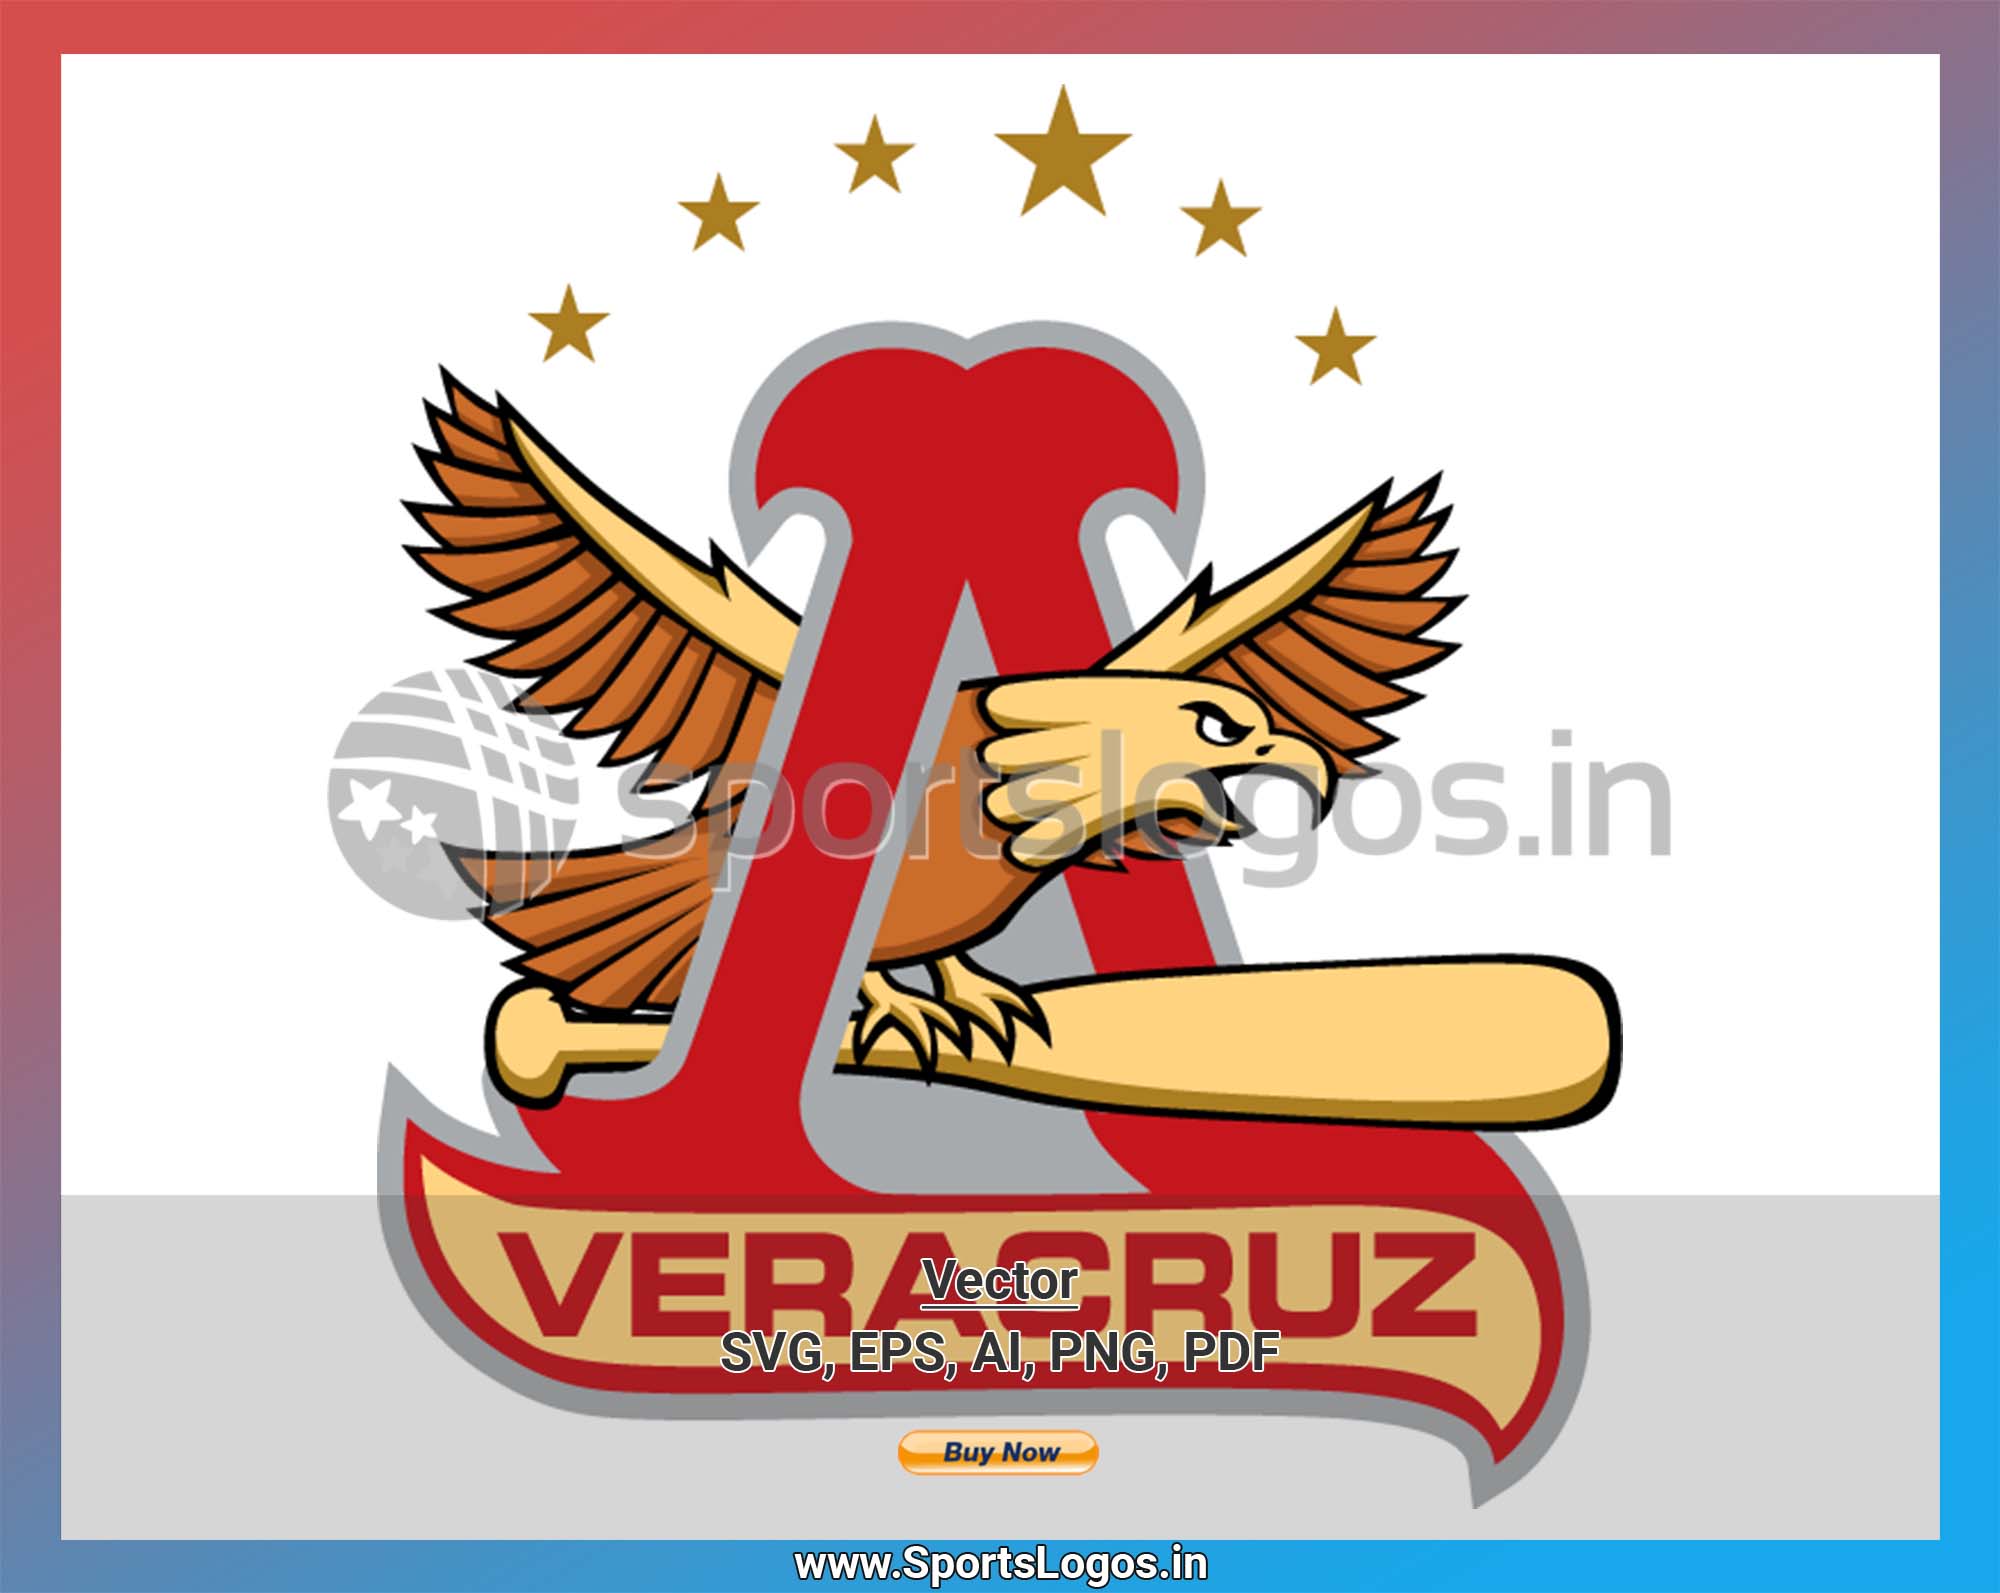 Veracruz Rojos del Águila - 2013, Liga Mexicana de Béisbol, Baseball Sports  Vector / SVG Logo in 5 formats